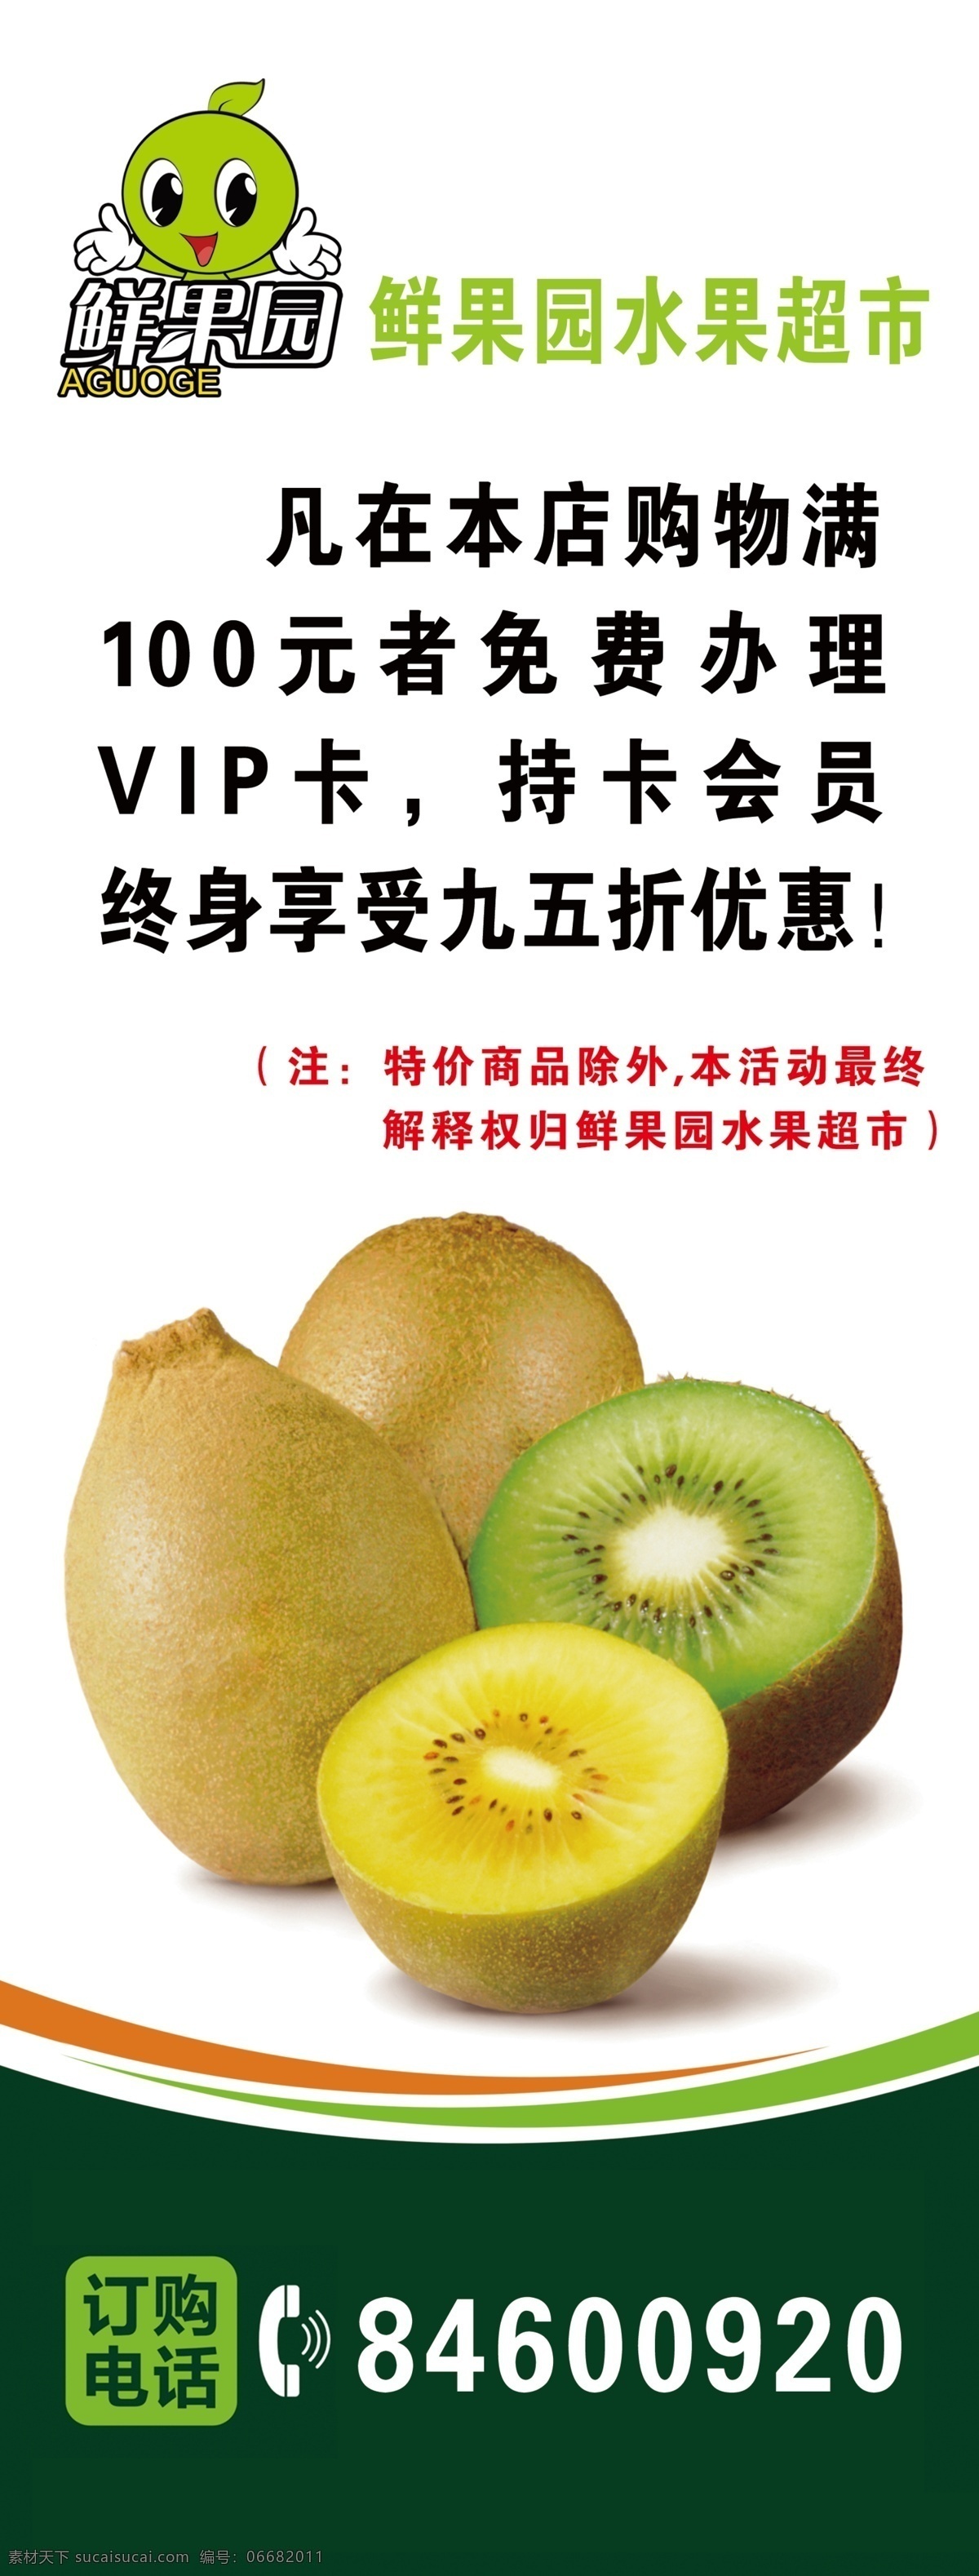 水果展架 水果 展架 绿色 鲜果园 绿色食品 营养健康 广告设计模板 源文件